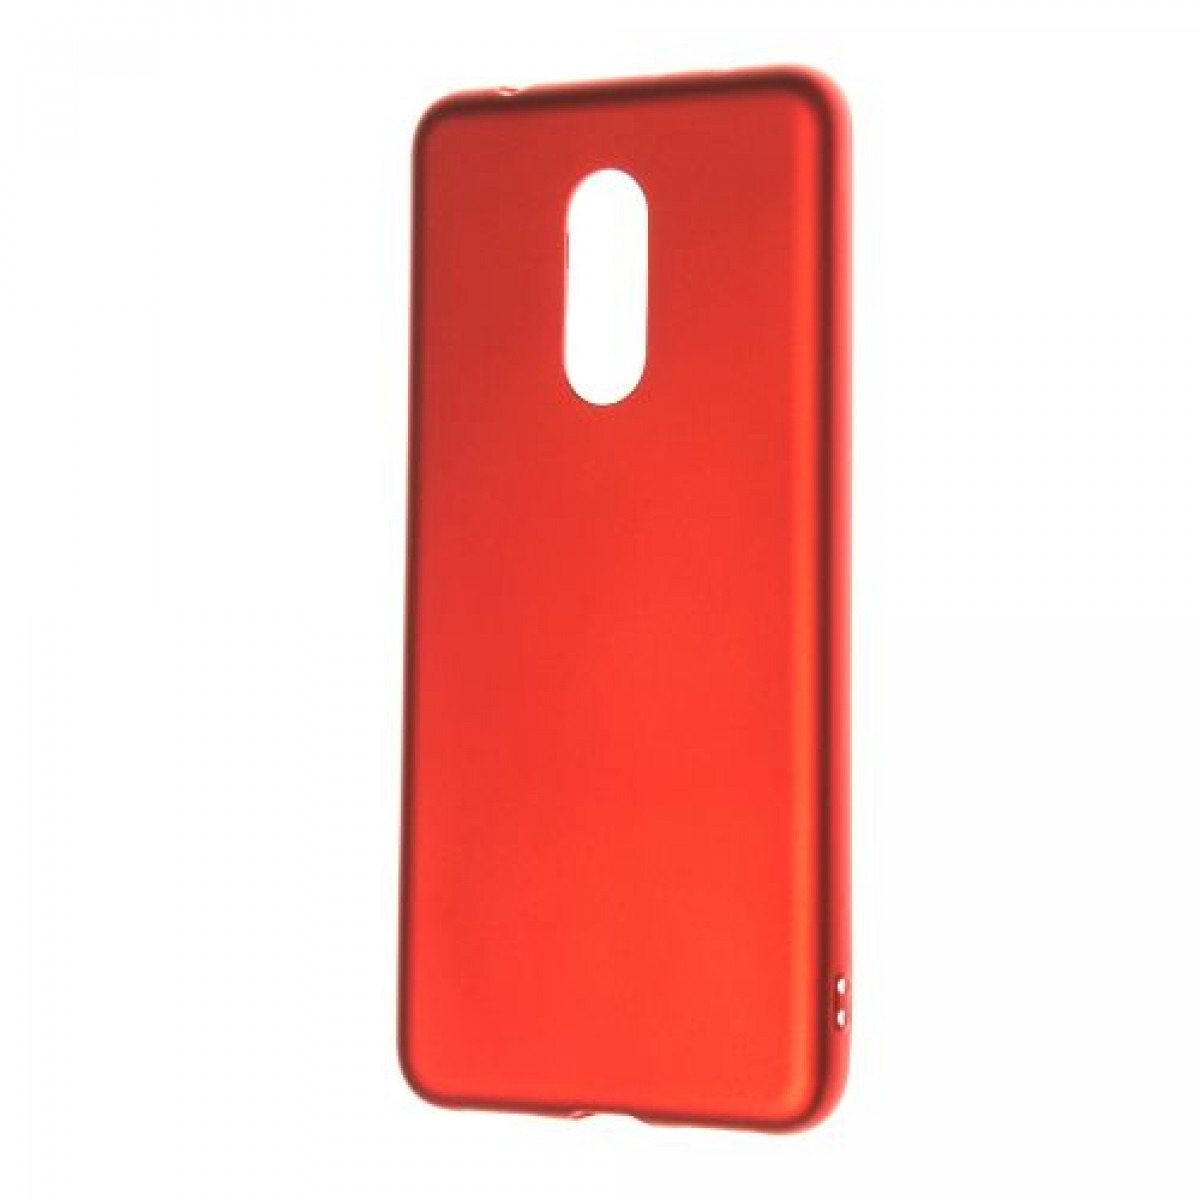 RED Tpu Case Xiaomi Redmi 5